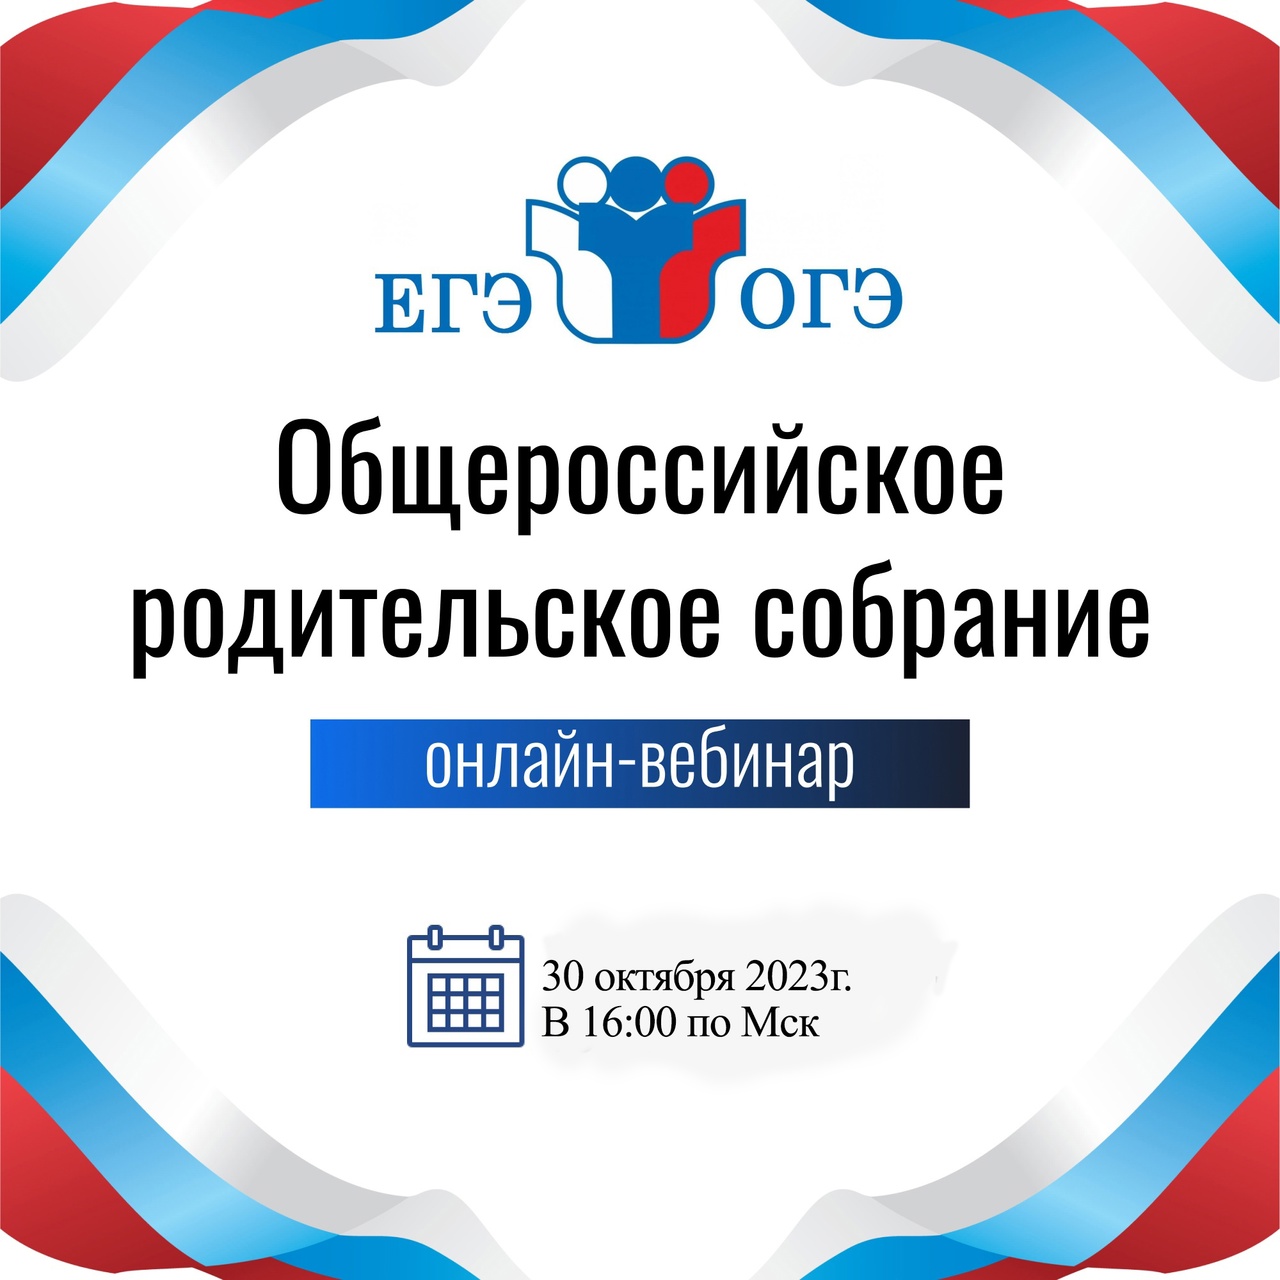 Общероссийское родительское вебинар-собрание, 30 октября 2023 года.